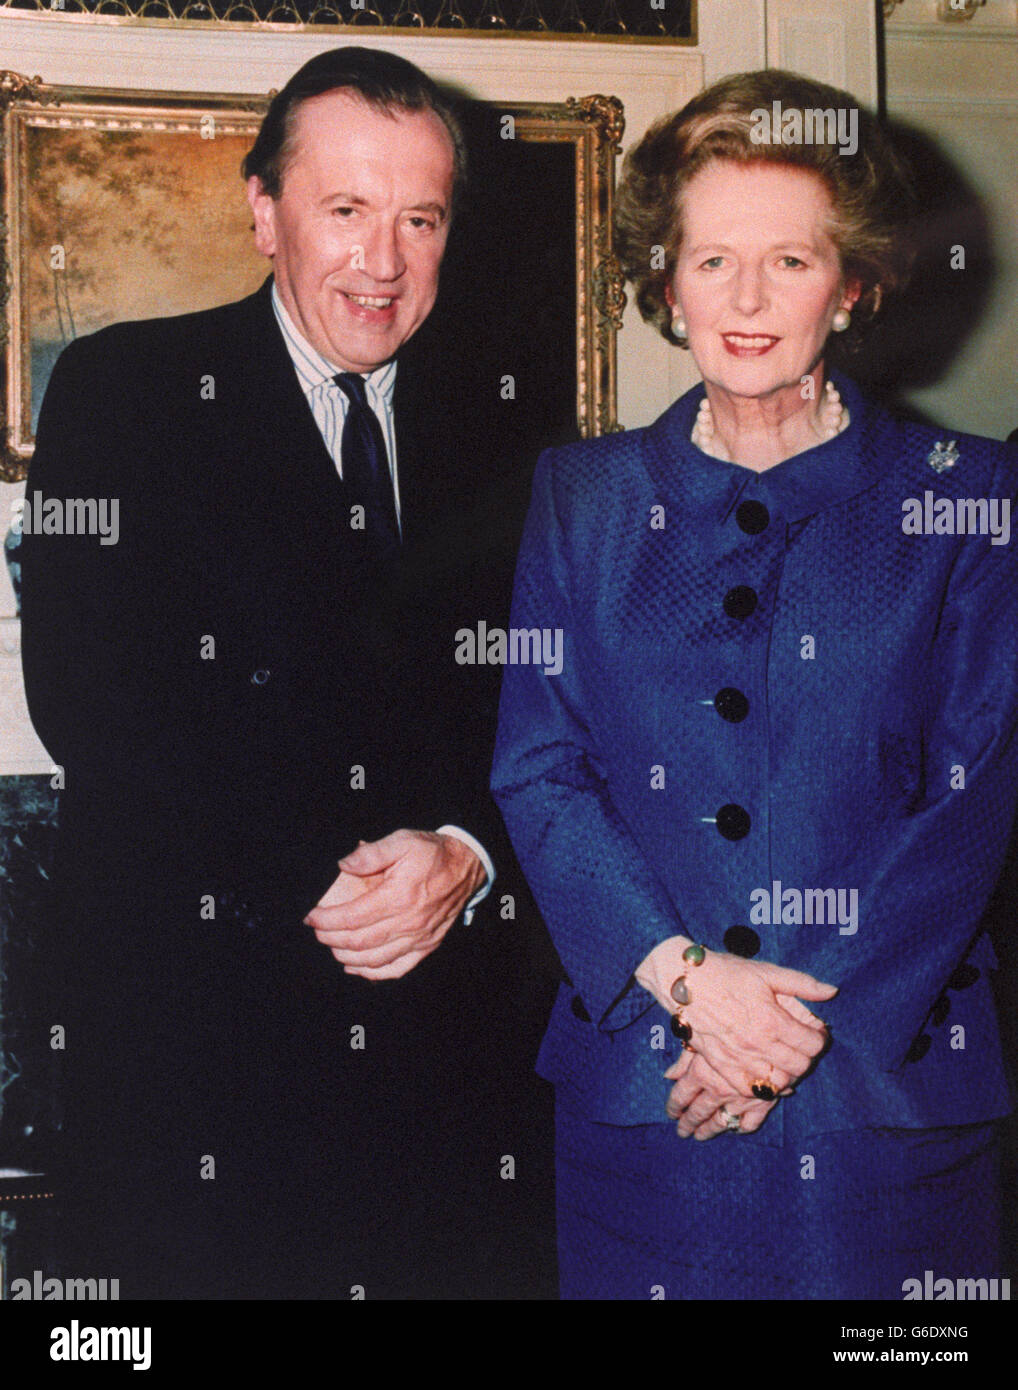 Télévision - parler avec David Frost - Margaret Thatcher - Londres Banque D'Images